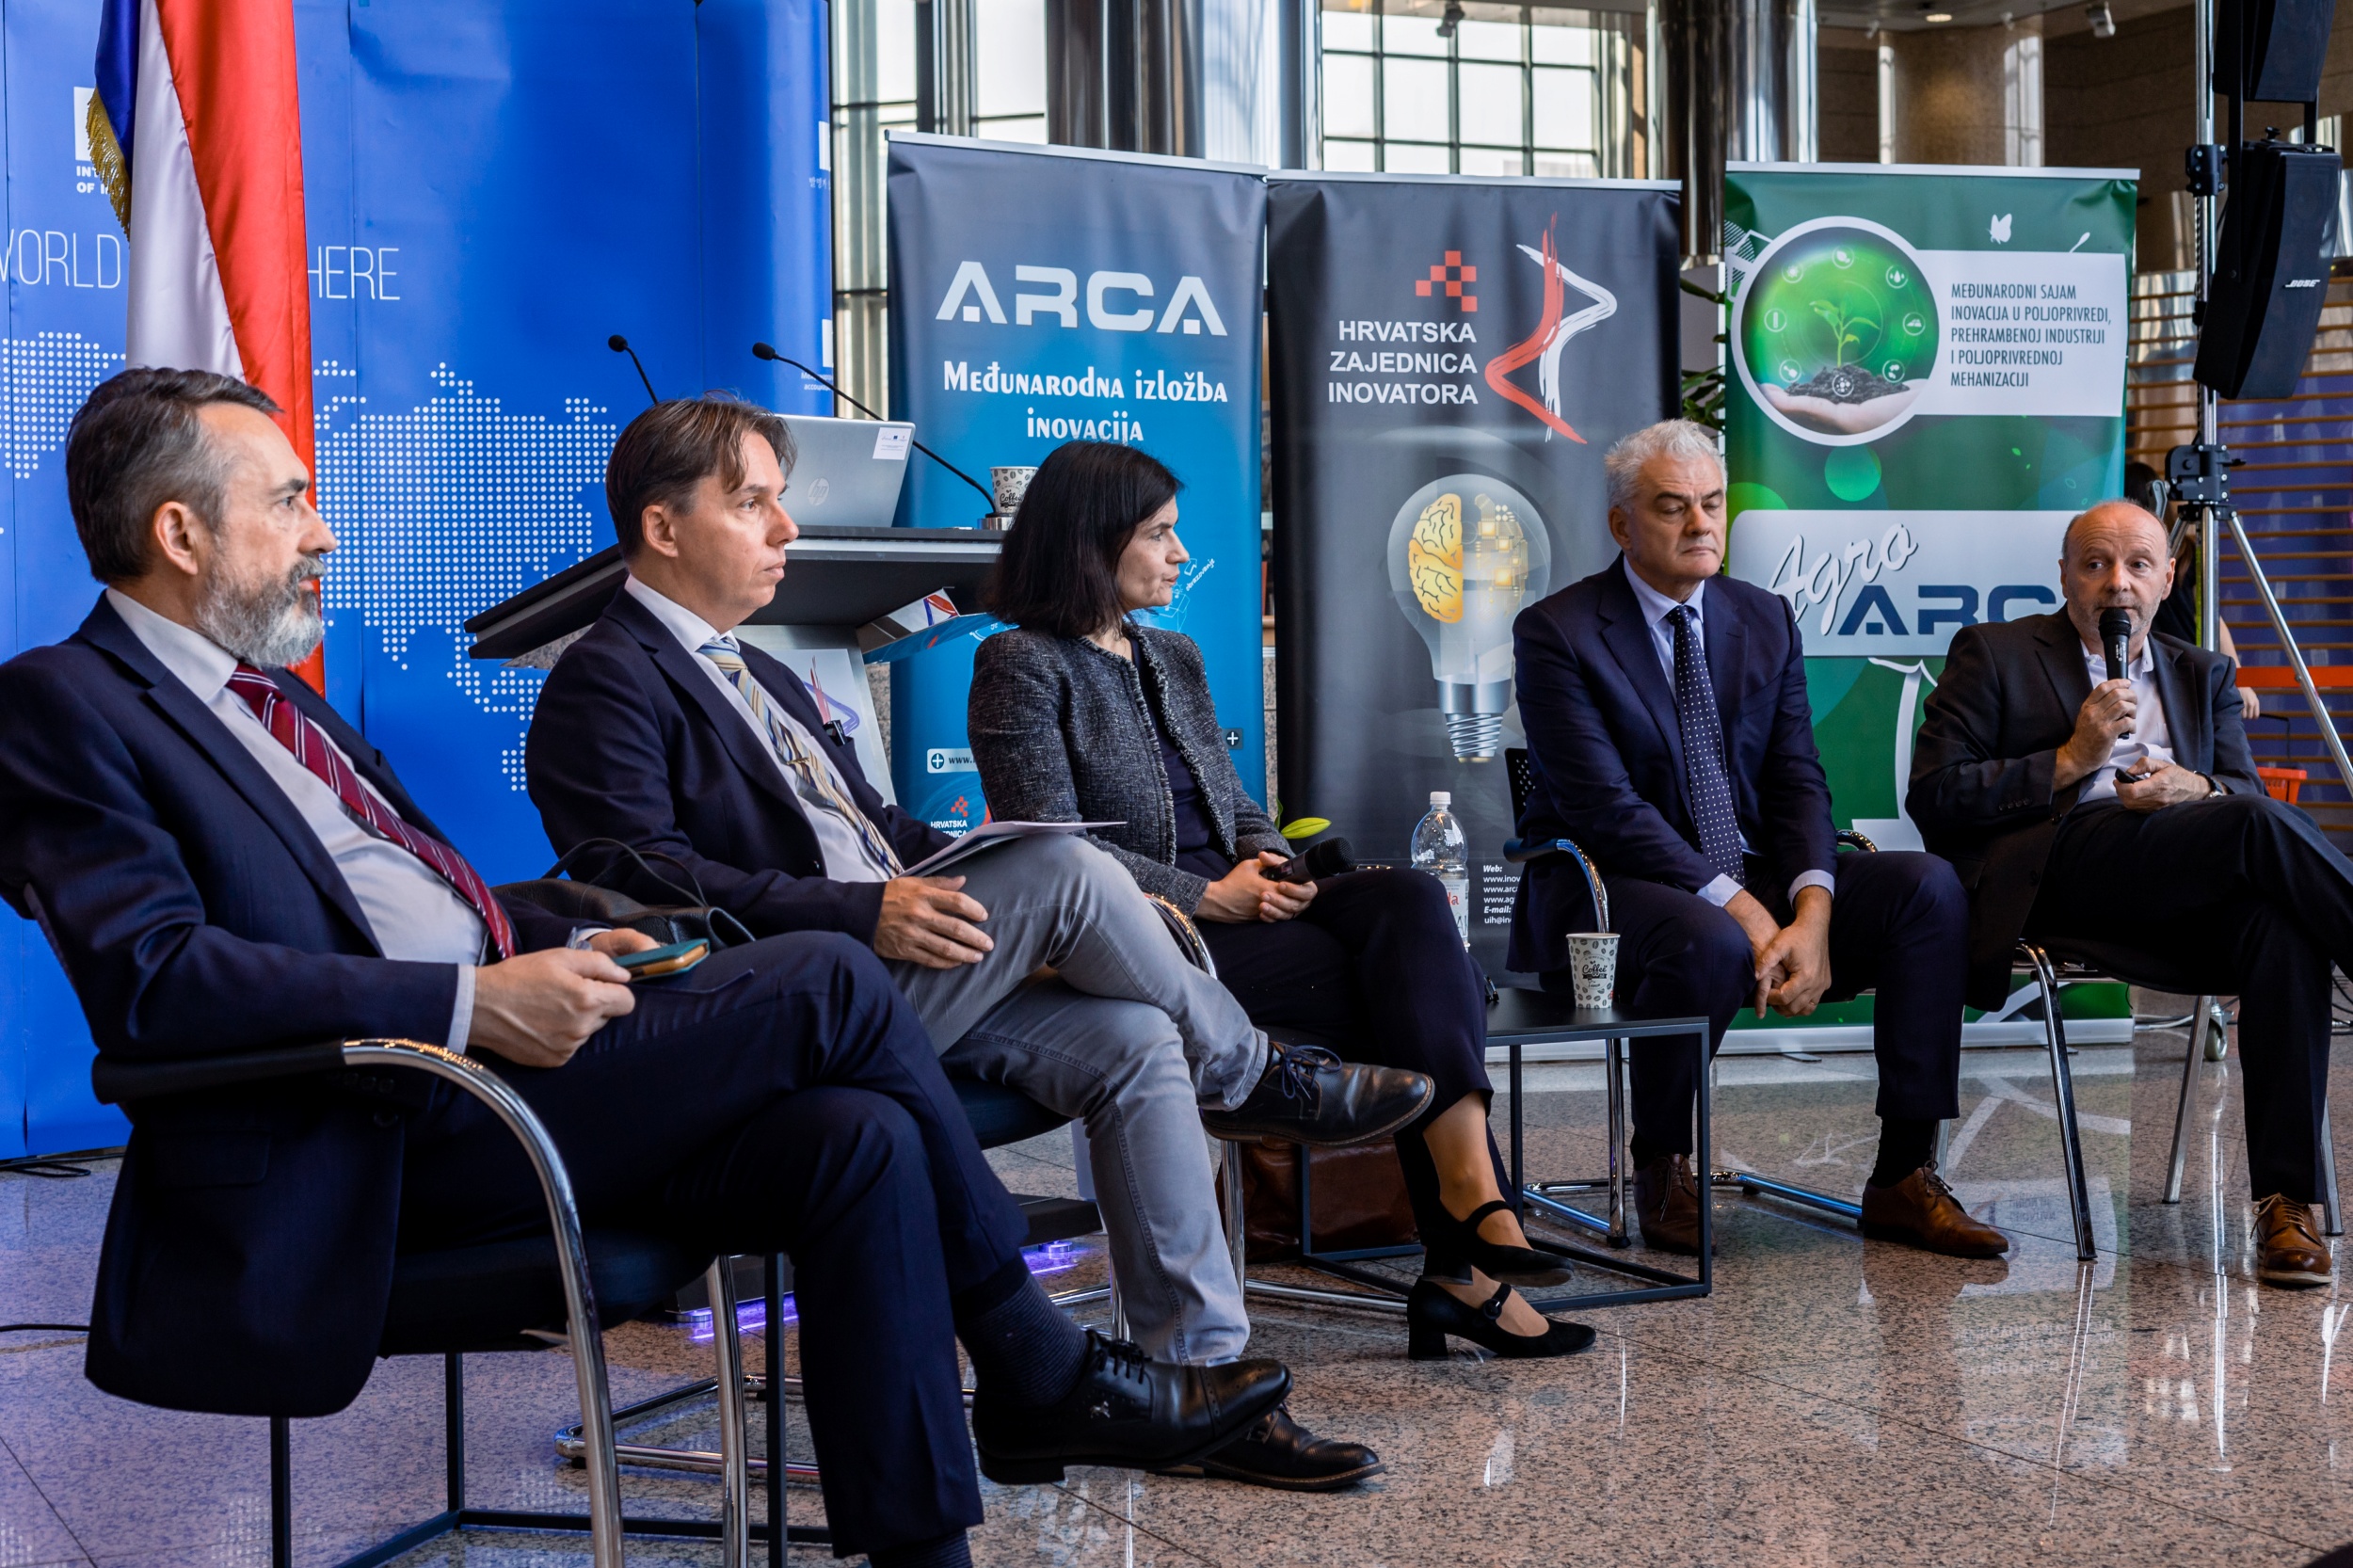 Pravni fakultet u Zagrebu sudjelovao je na 21. međunarodnoj izložbi inovacija ARCA 2023